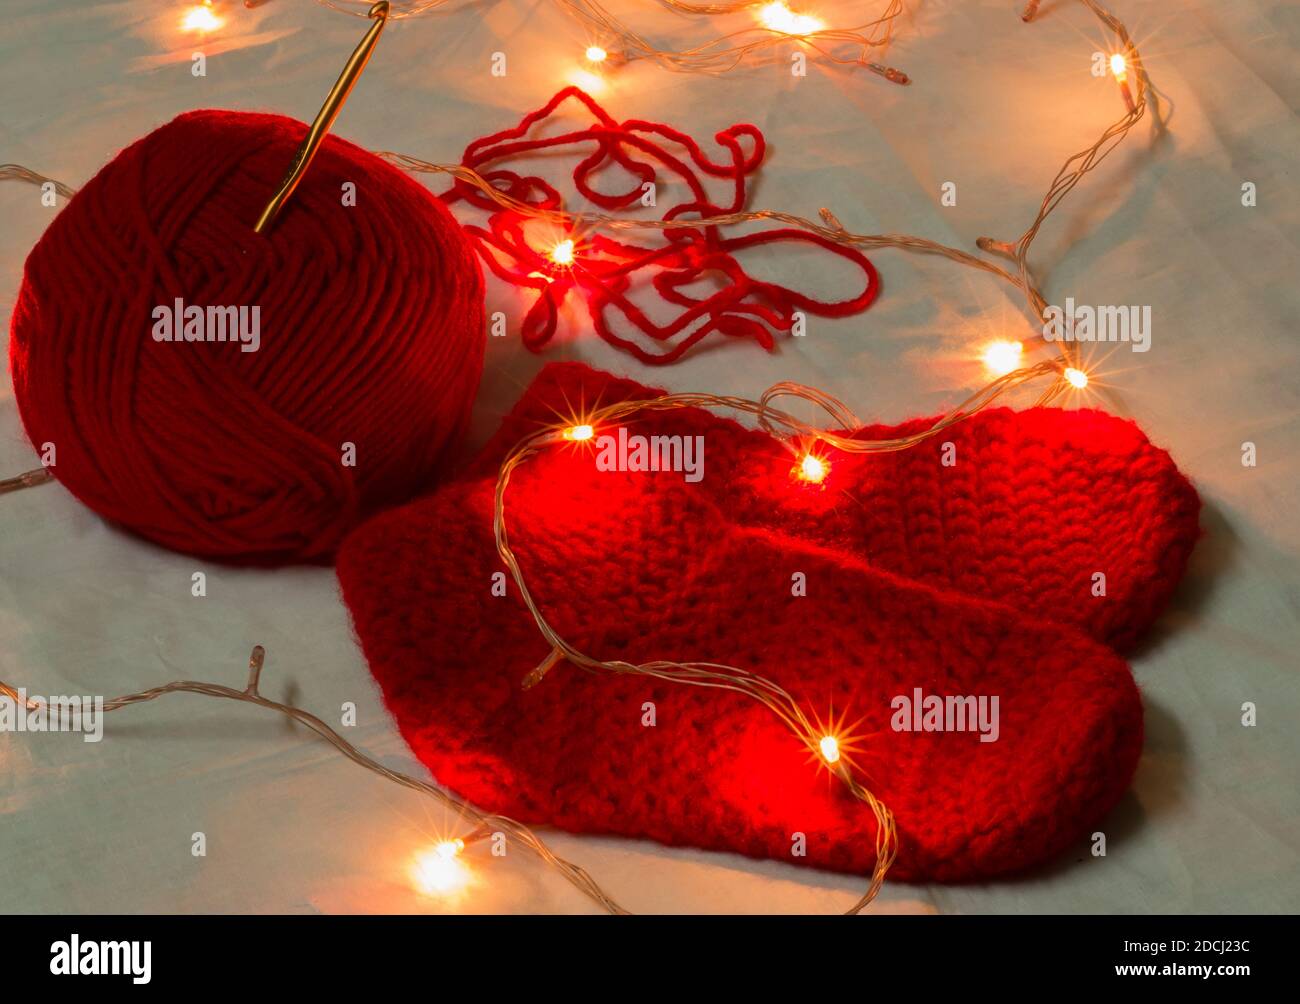 Calcetines de Navidad de lana de color rojo hechos a mano, aguja de chrochet y bola de lana iluminada con luces de Navidad en miniatura. Copiar fondo de espacio Foto de stock